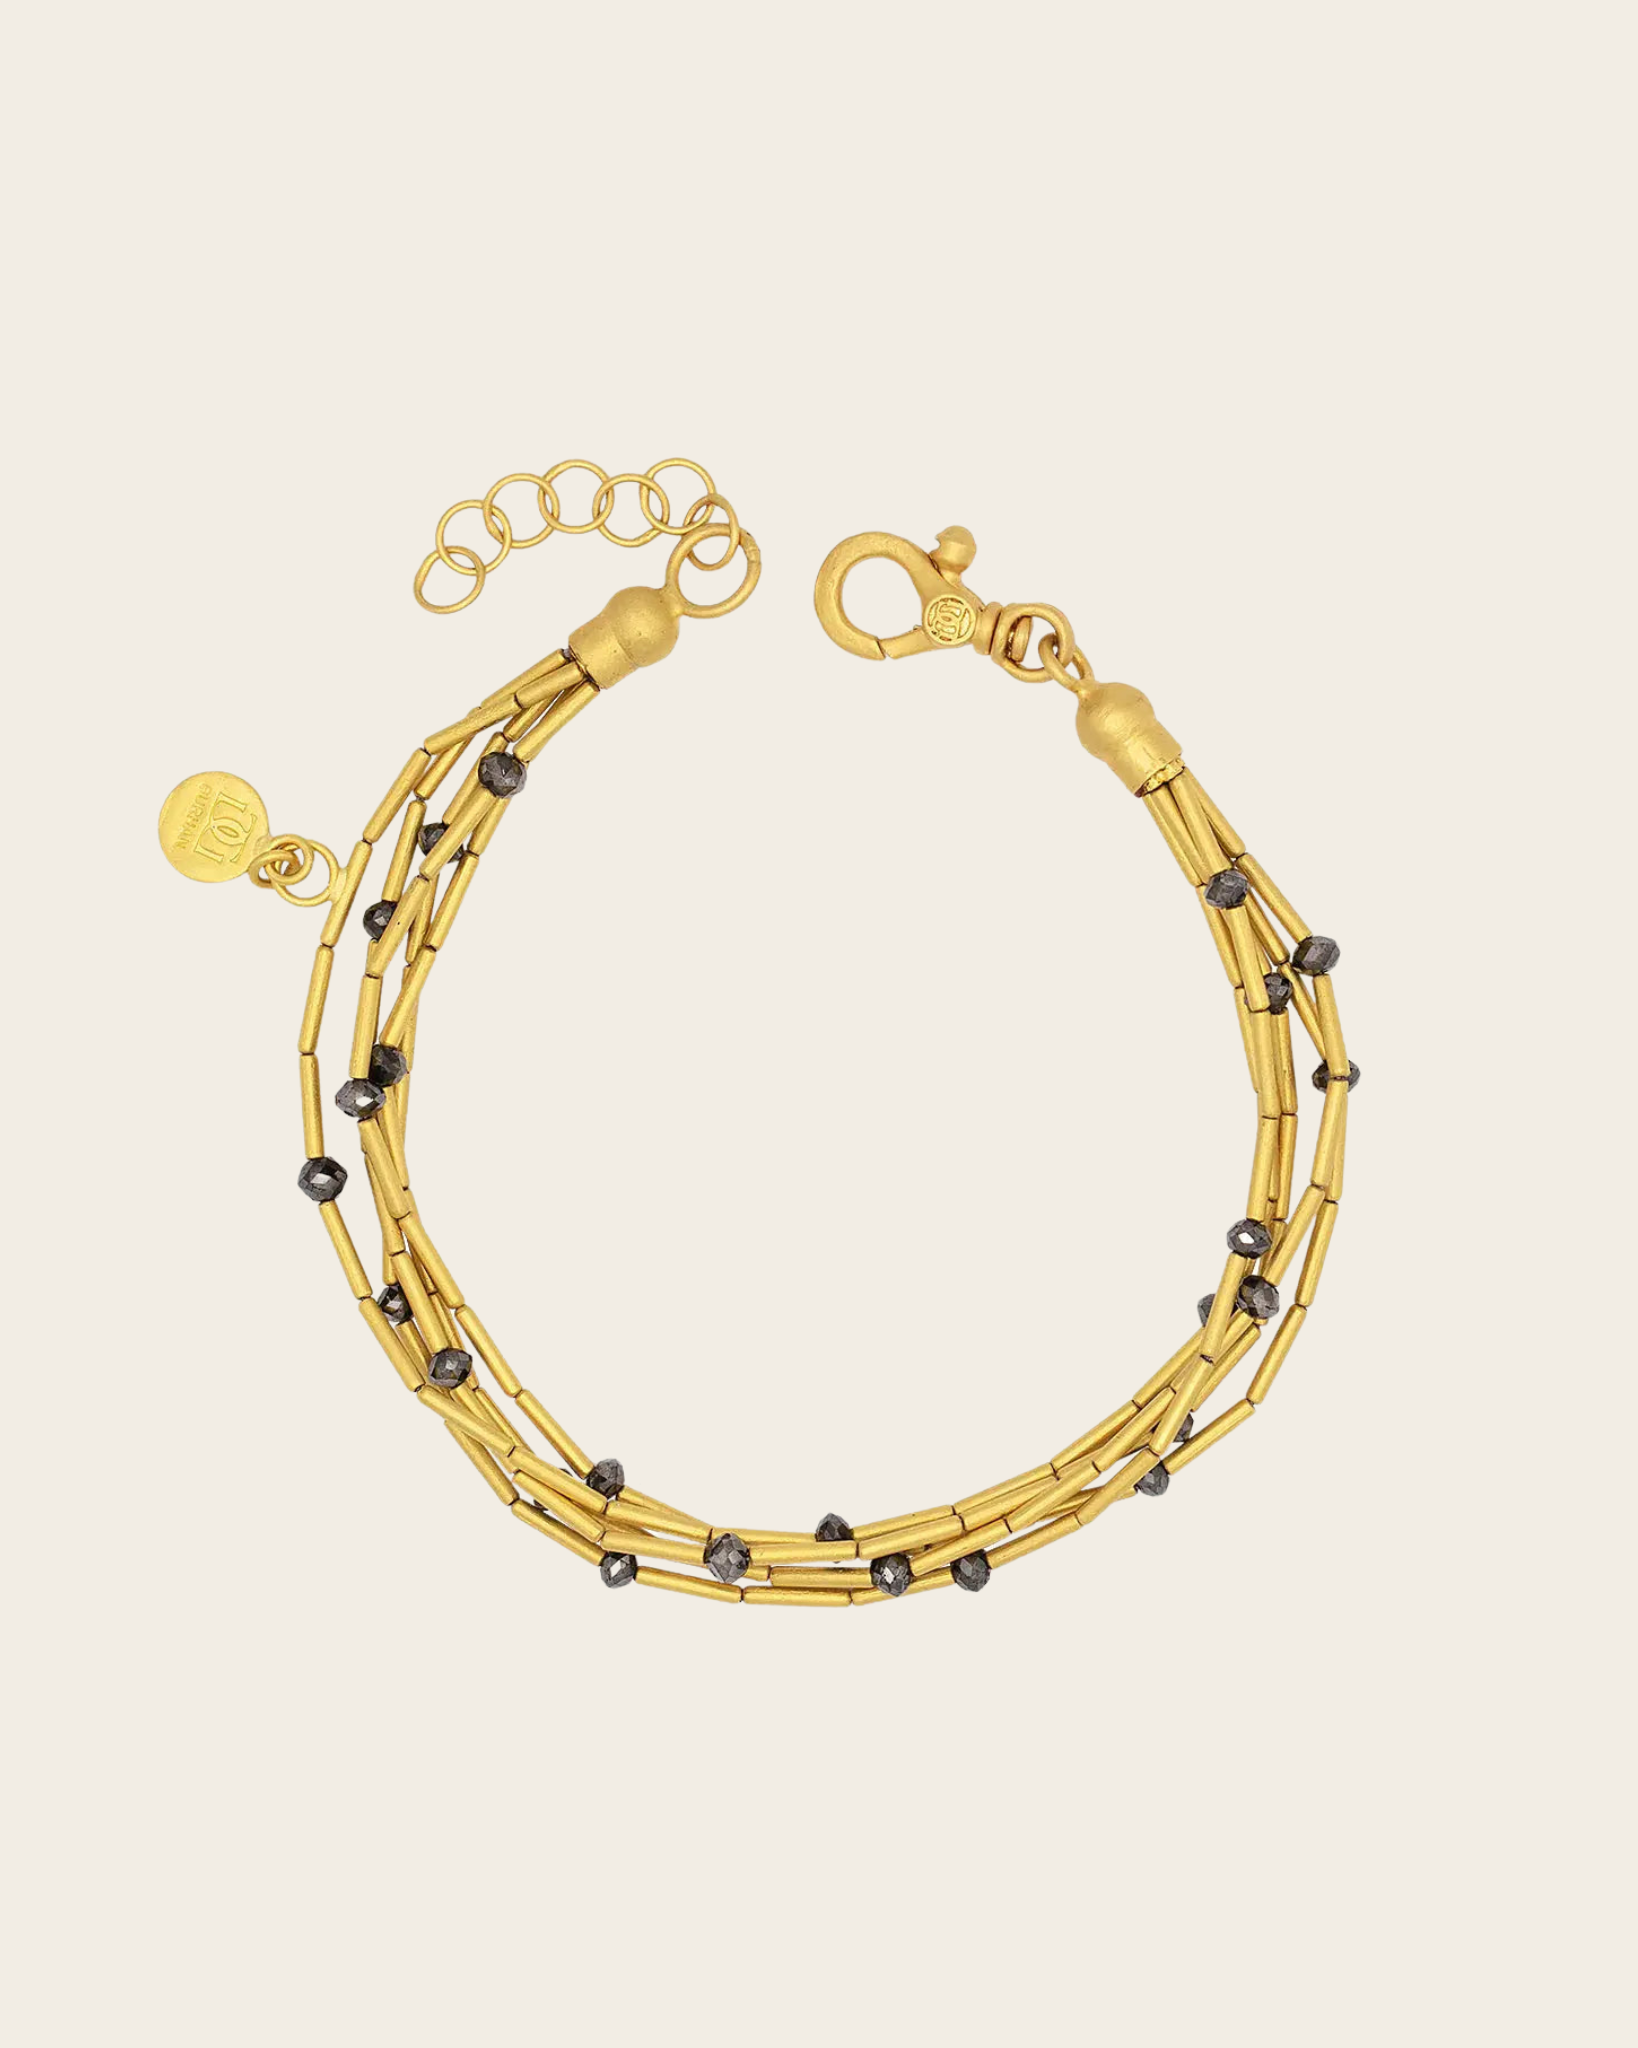 GURHAN Rain Gold Multi Strand Bracelet, 5-Strand, Gold Tubes, with Black Diamond